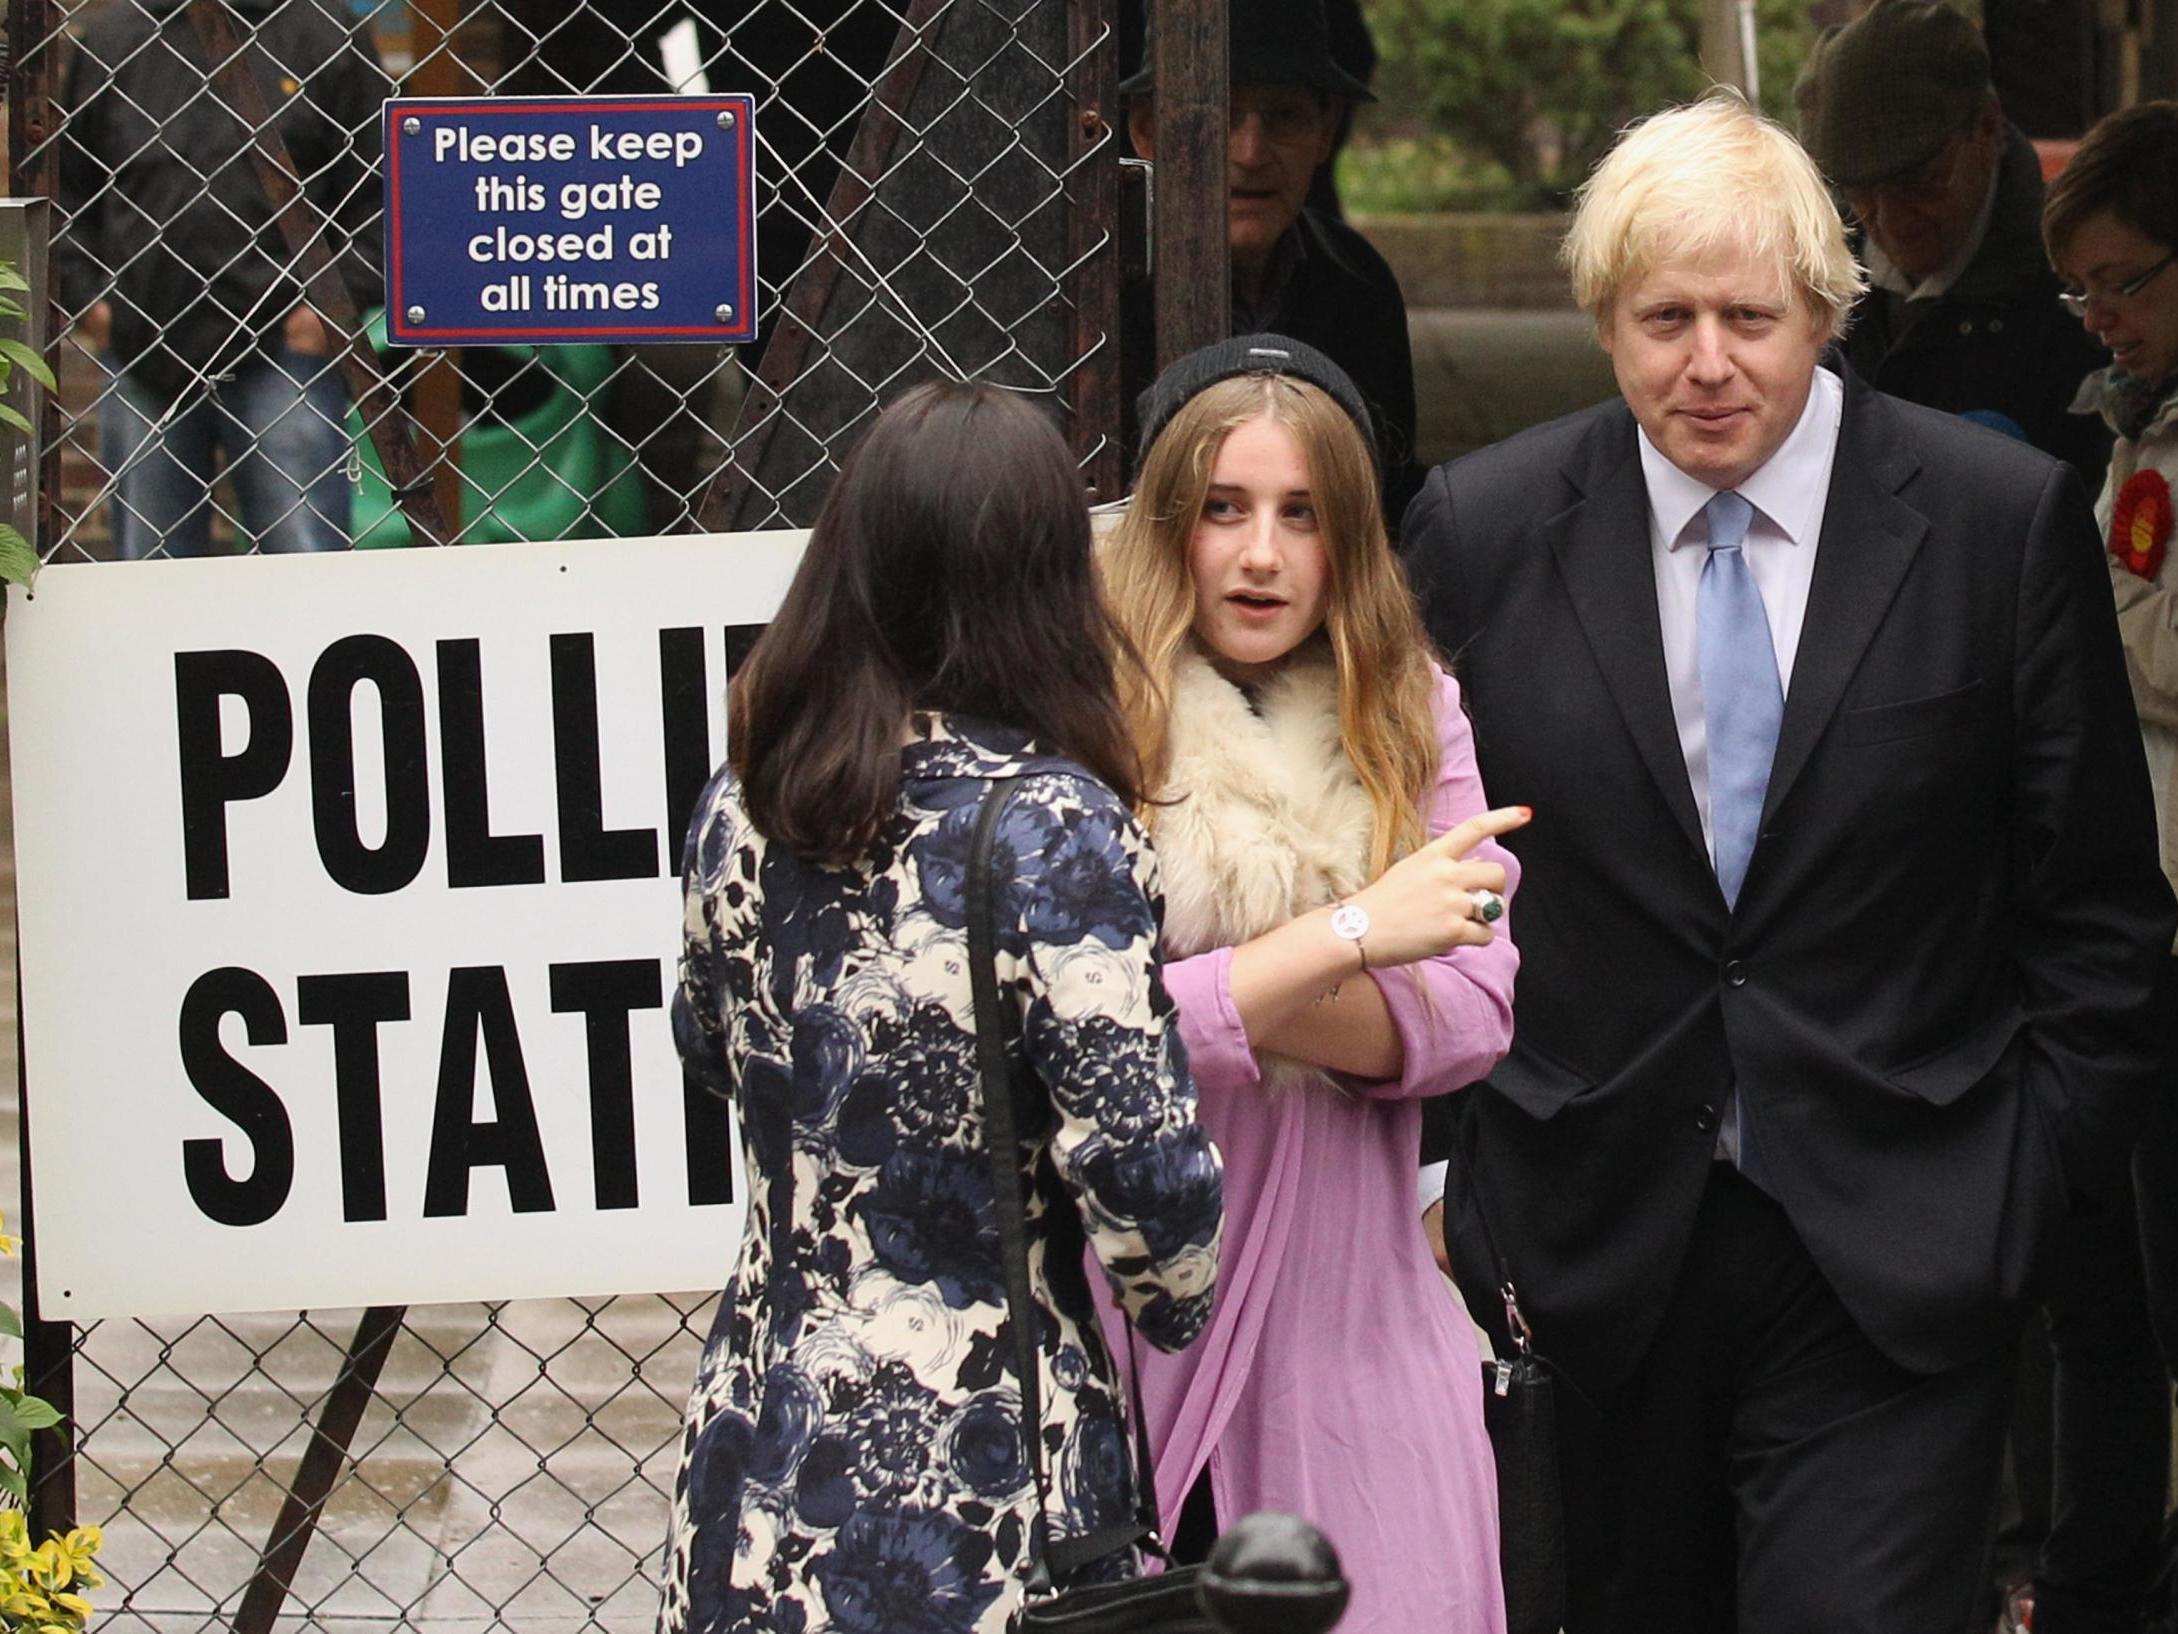 Boris Johnson fotografiado con su hija Lara Johnson en un colegio electoral tras depositar sus votos en las elecciones para el próximo alcalde de Londres en 2012